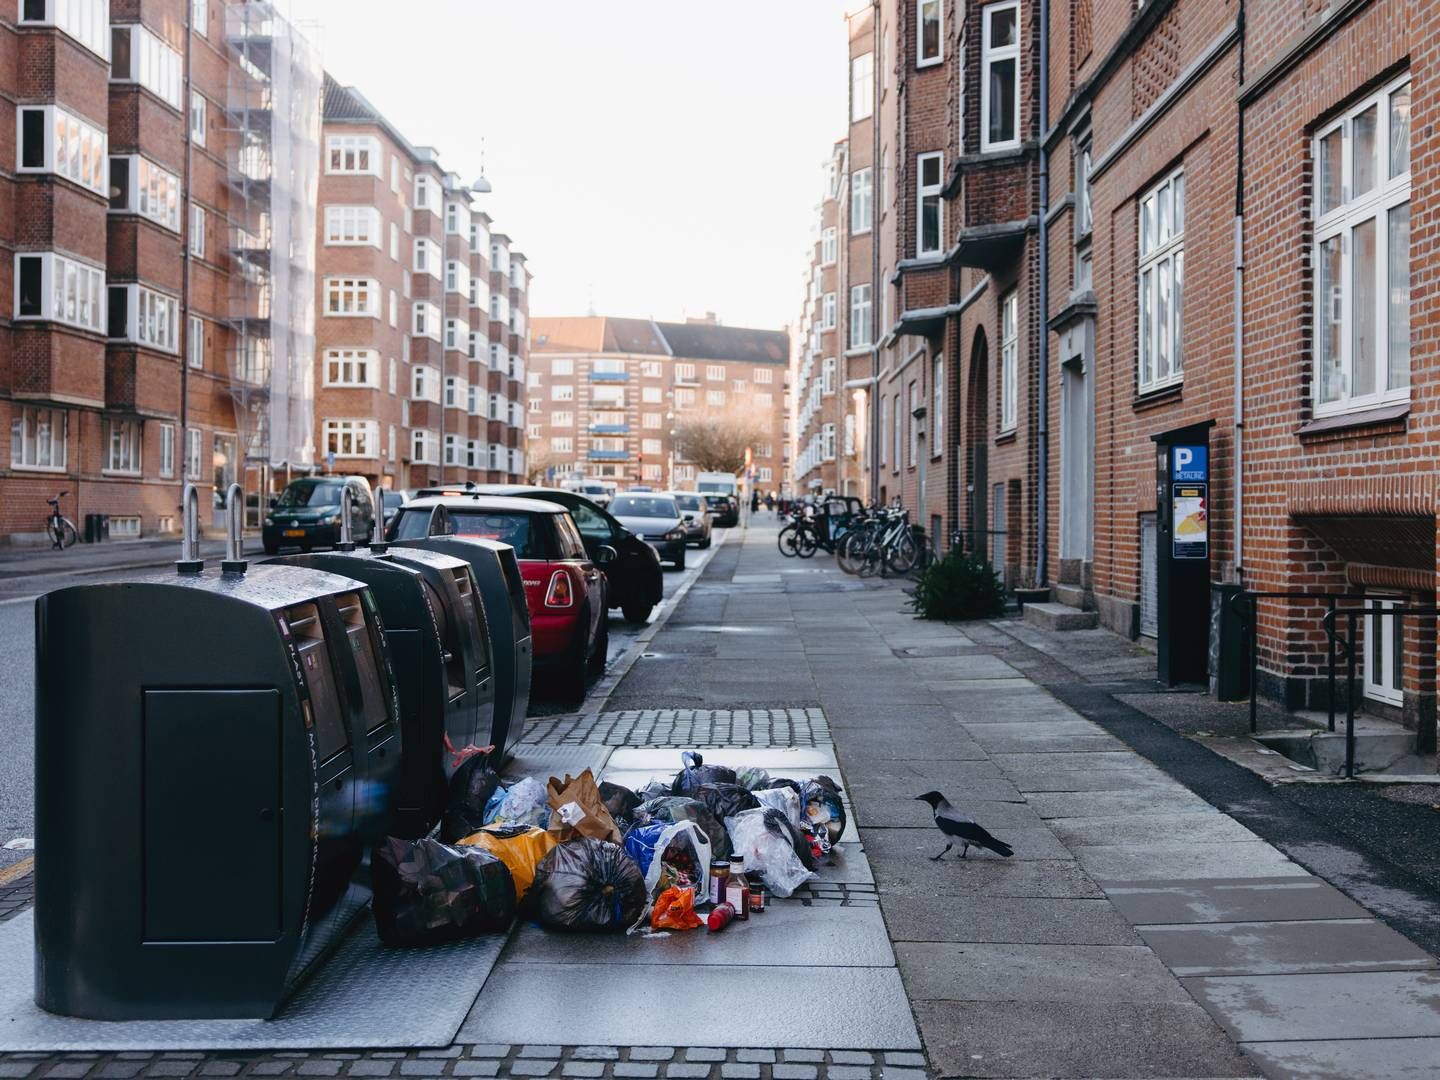 Affald flyder rundt om nedgravede containere i Aarhus, hvor Kredsløb har udfordringer med dagrenovation. | Foto: Emilie Toldam Futtrup